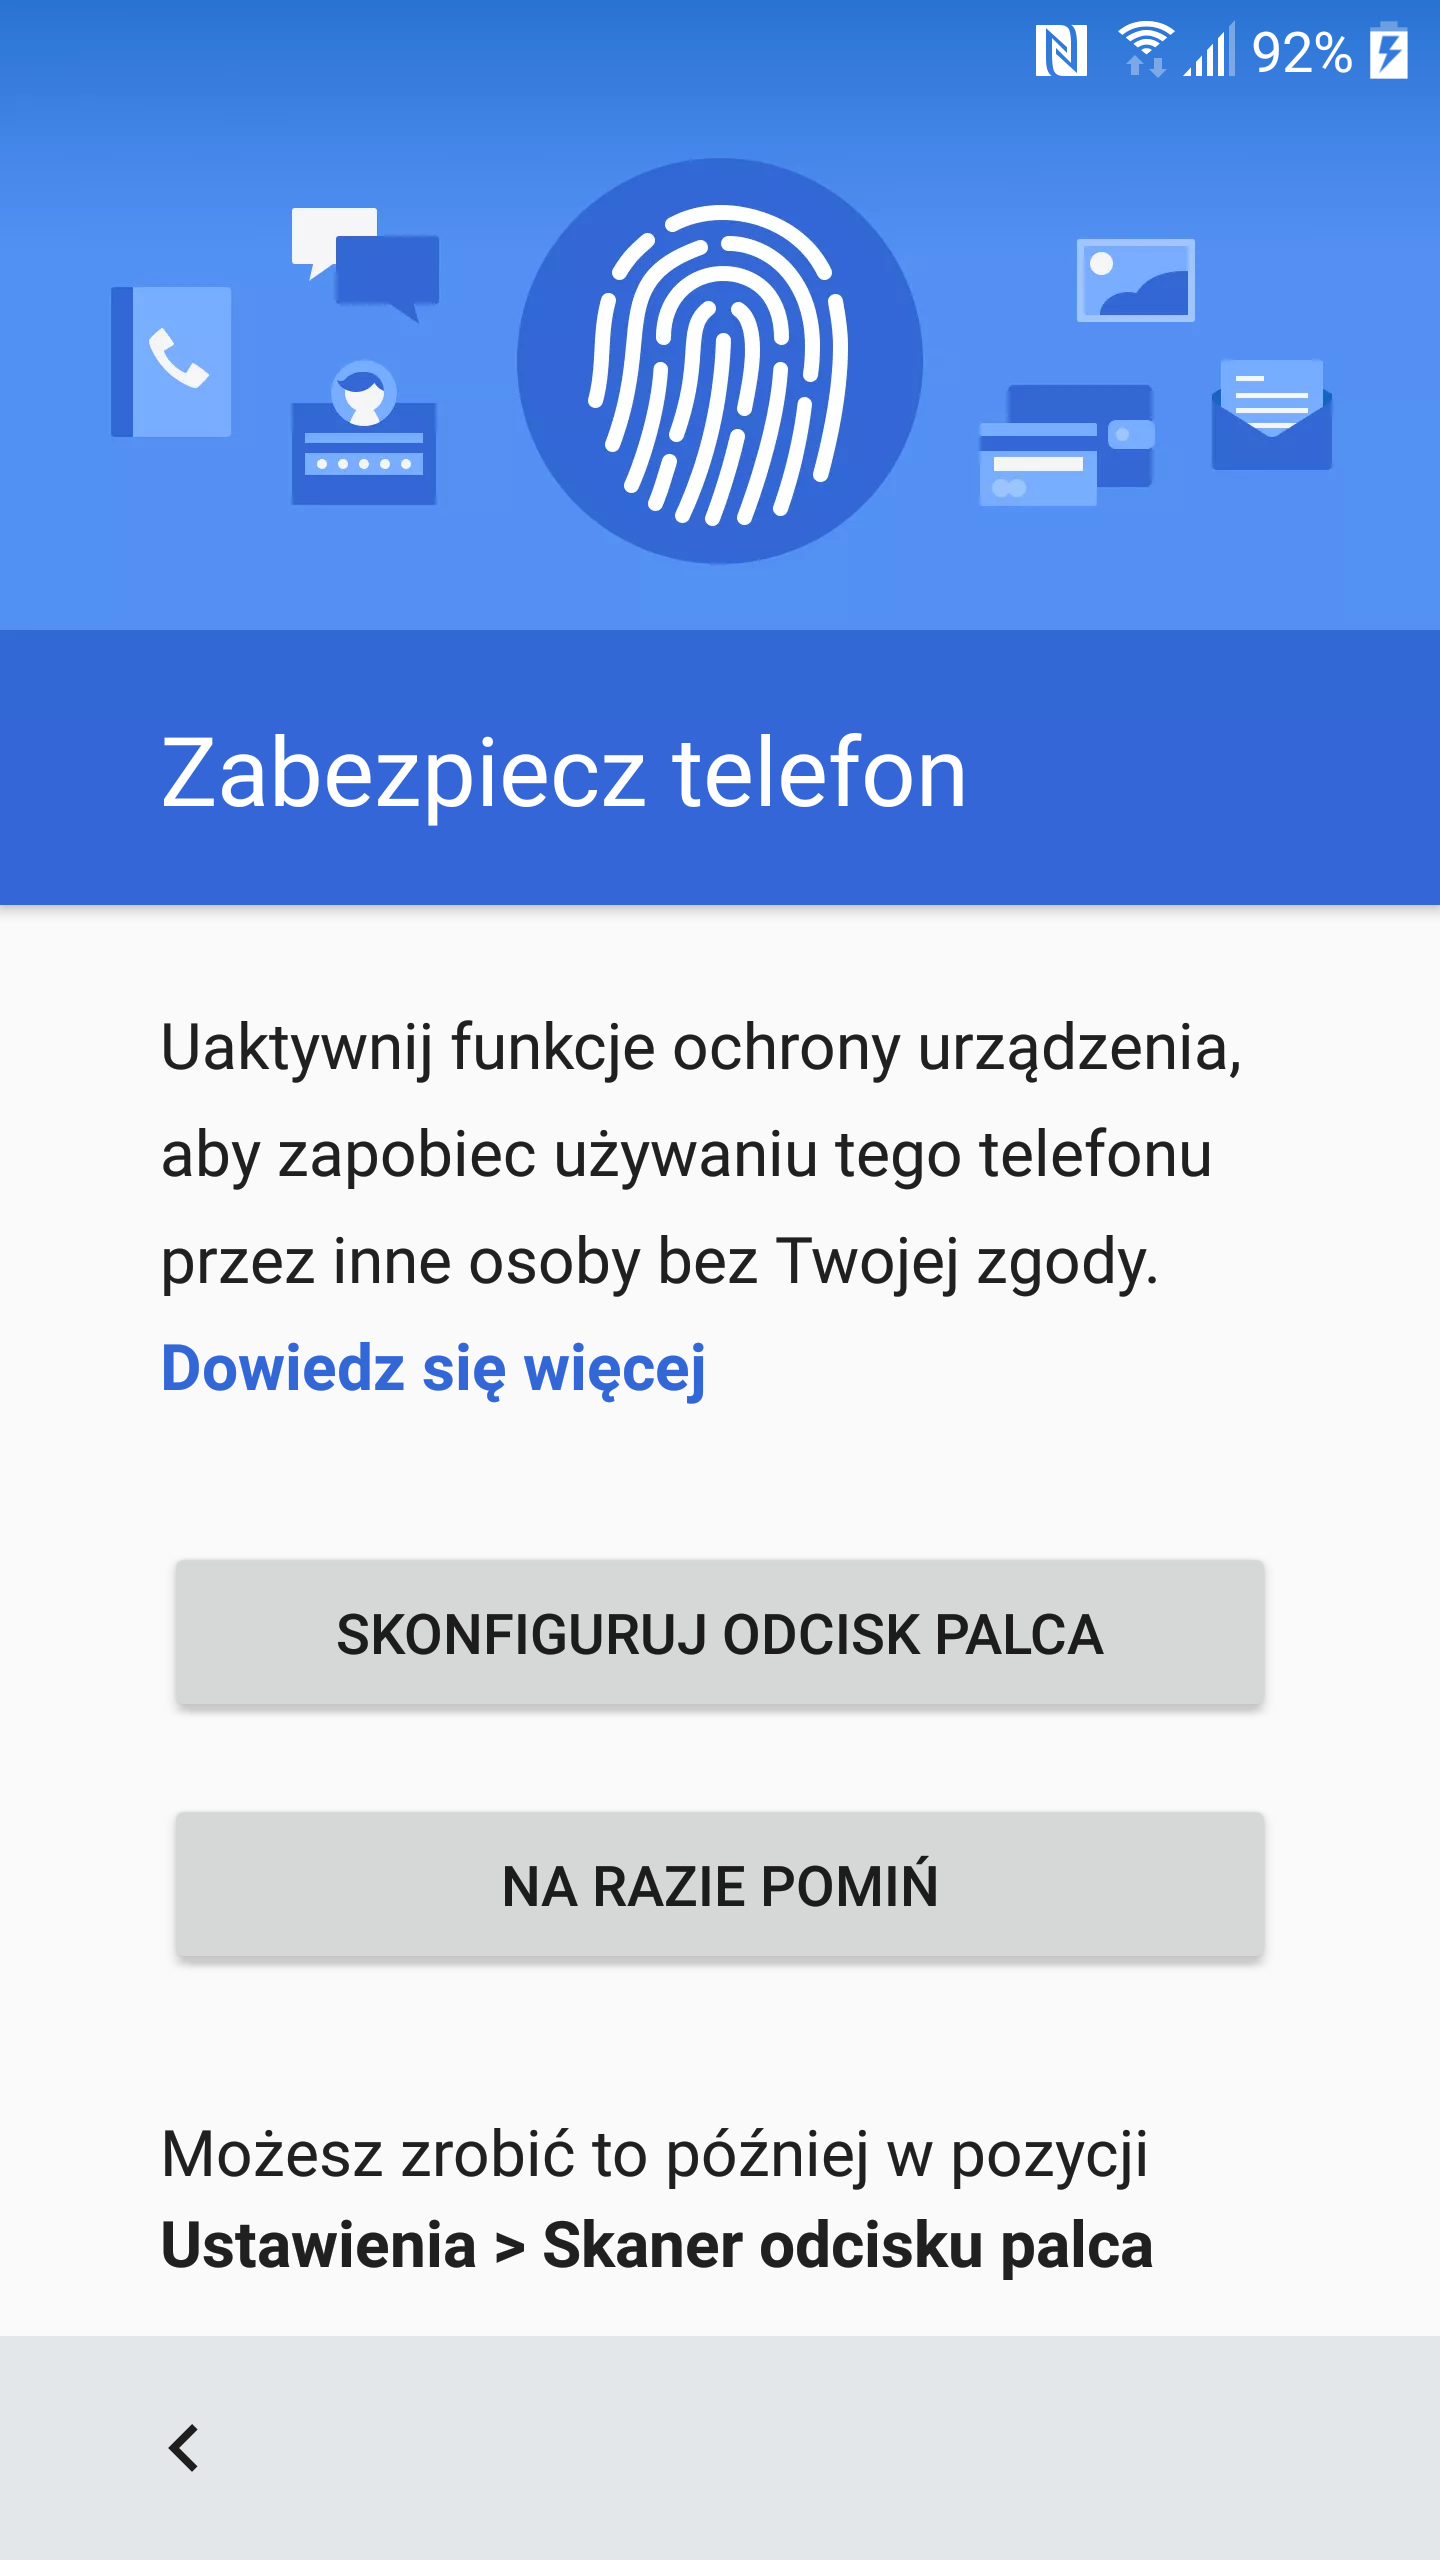 Zabezpieczenie HTC 10 odciskiem palca sprawdza się wybornie - recenzja 90sekund.pl